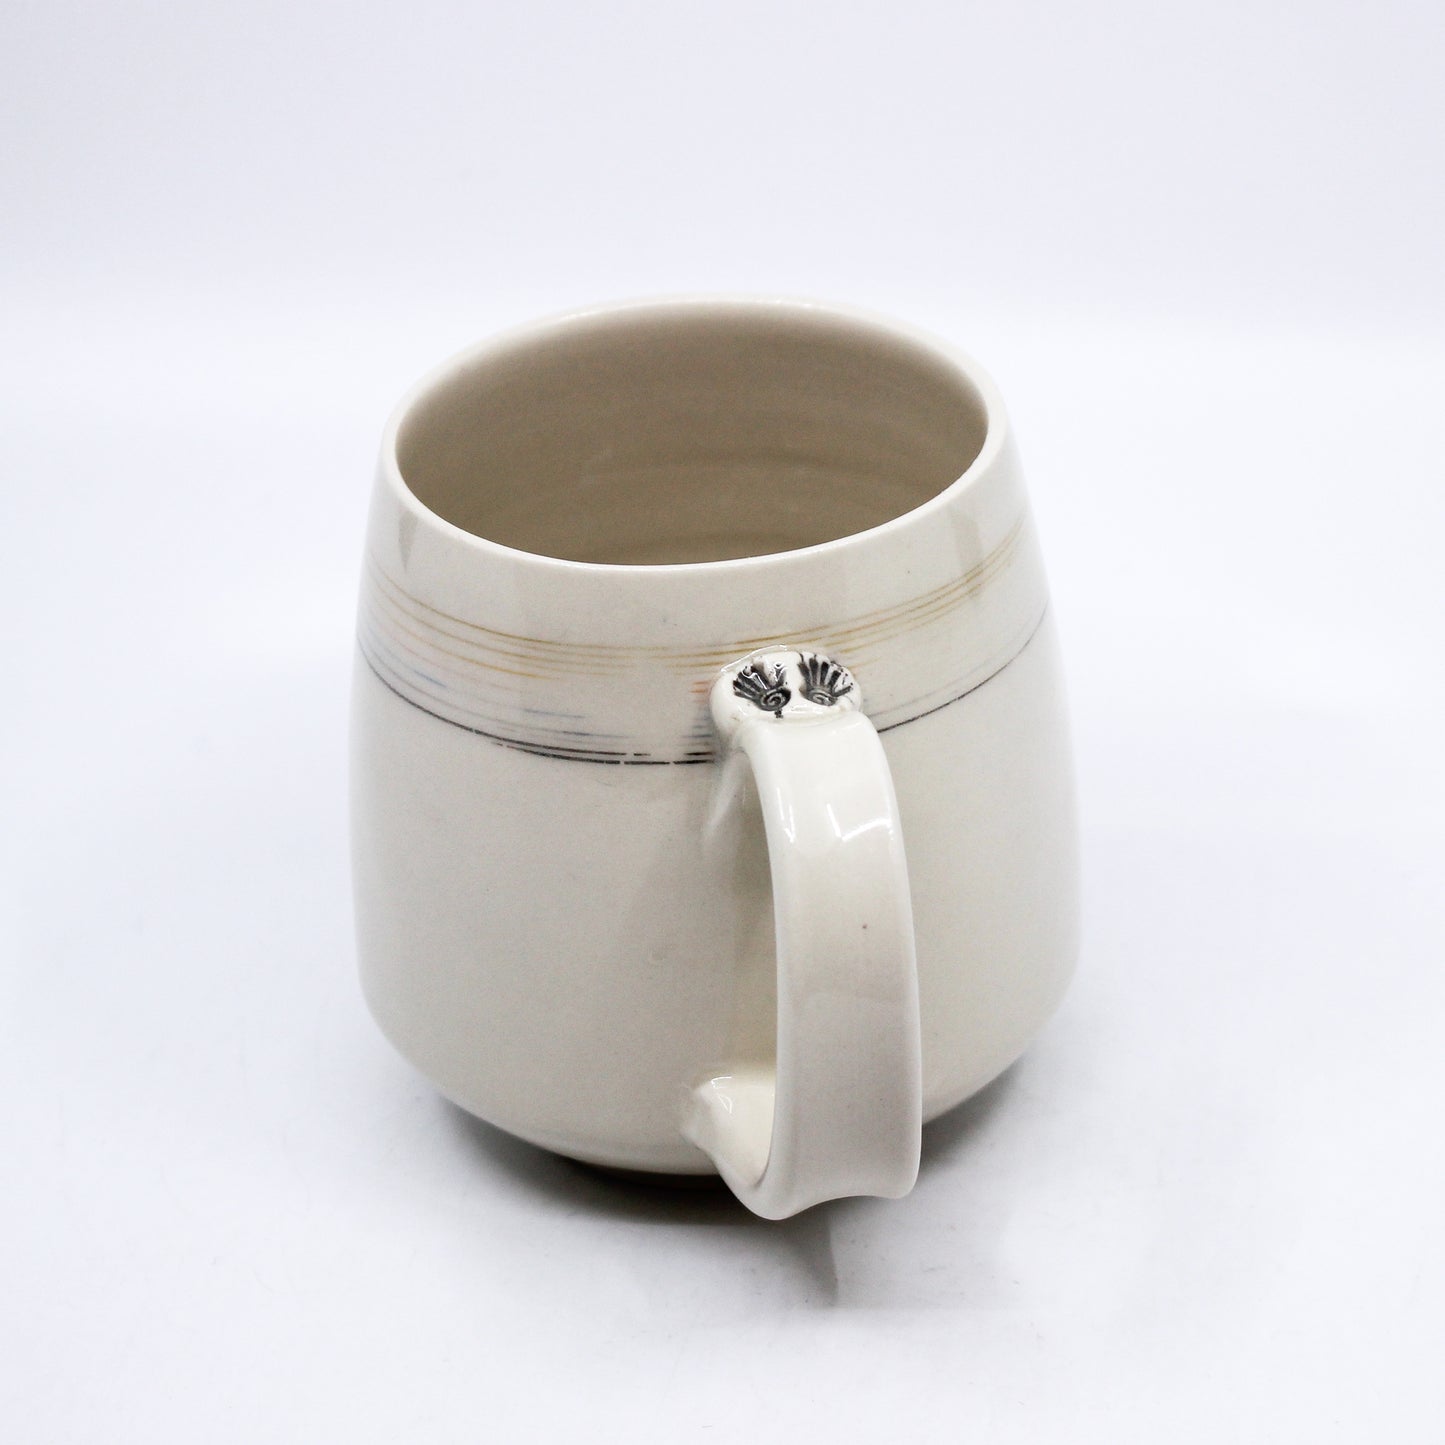 Handle of mug with hand print stamps